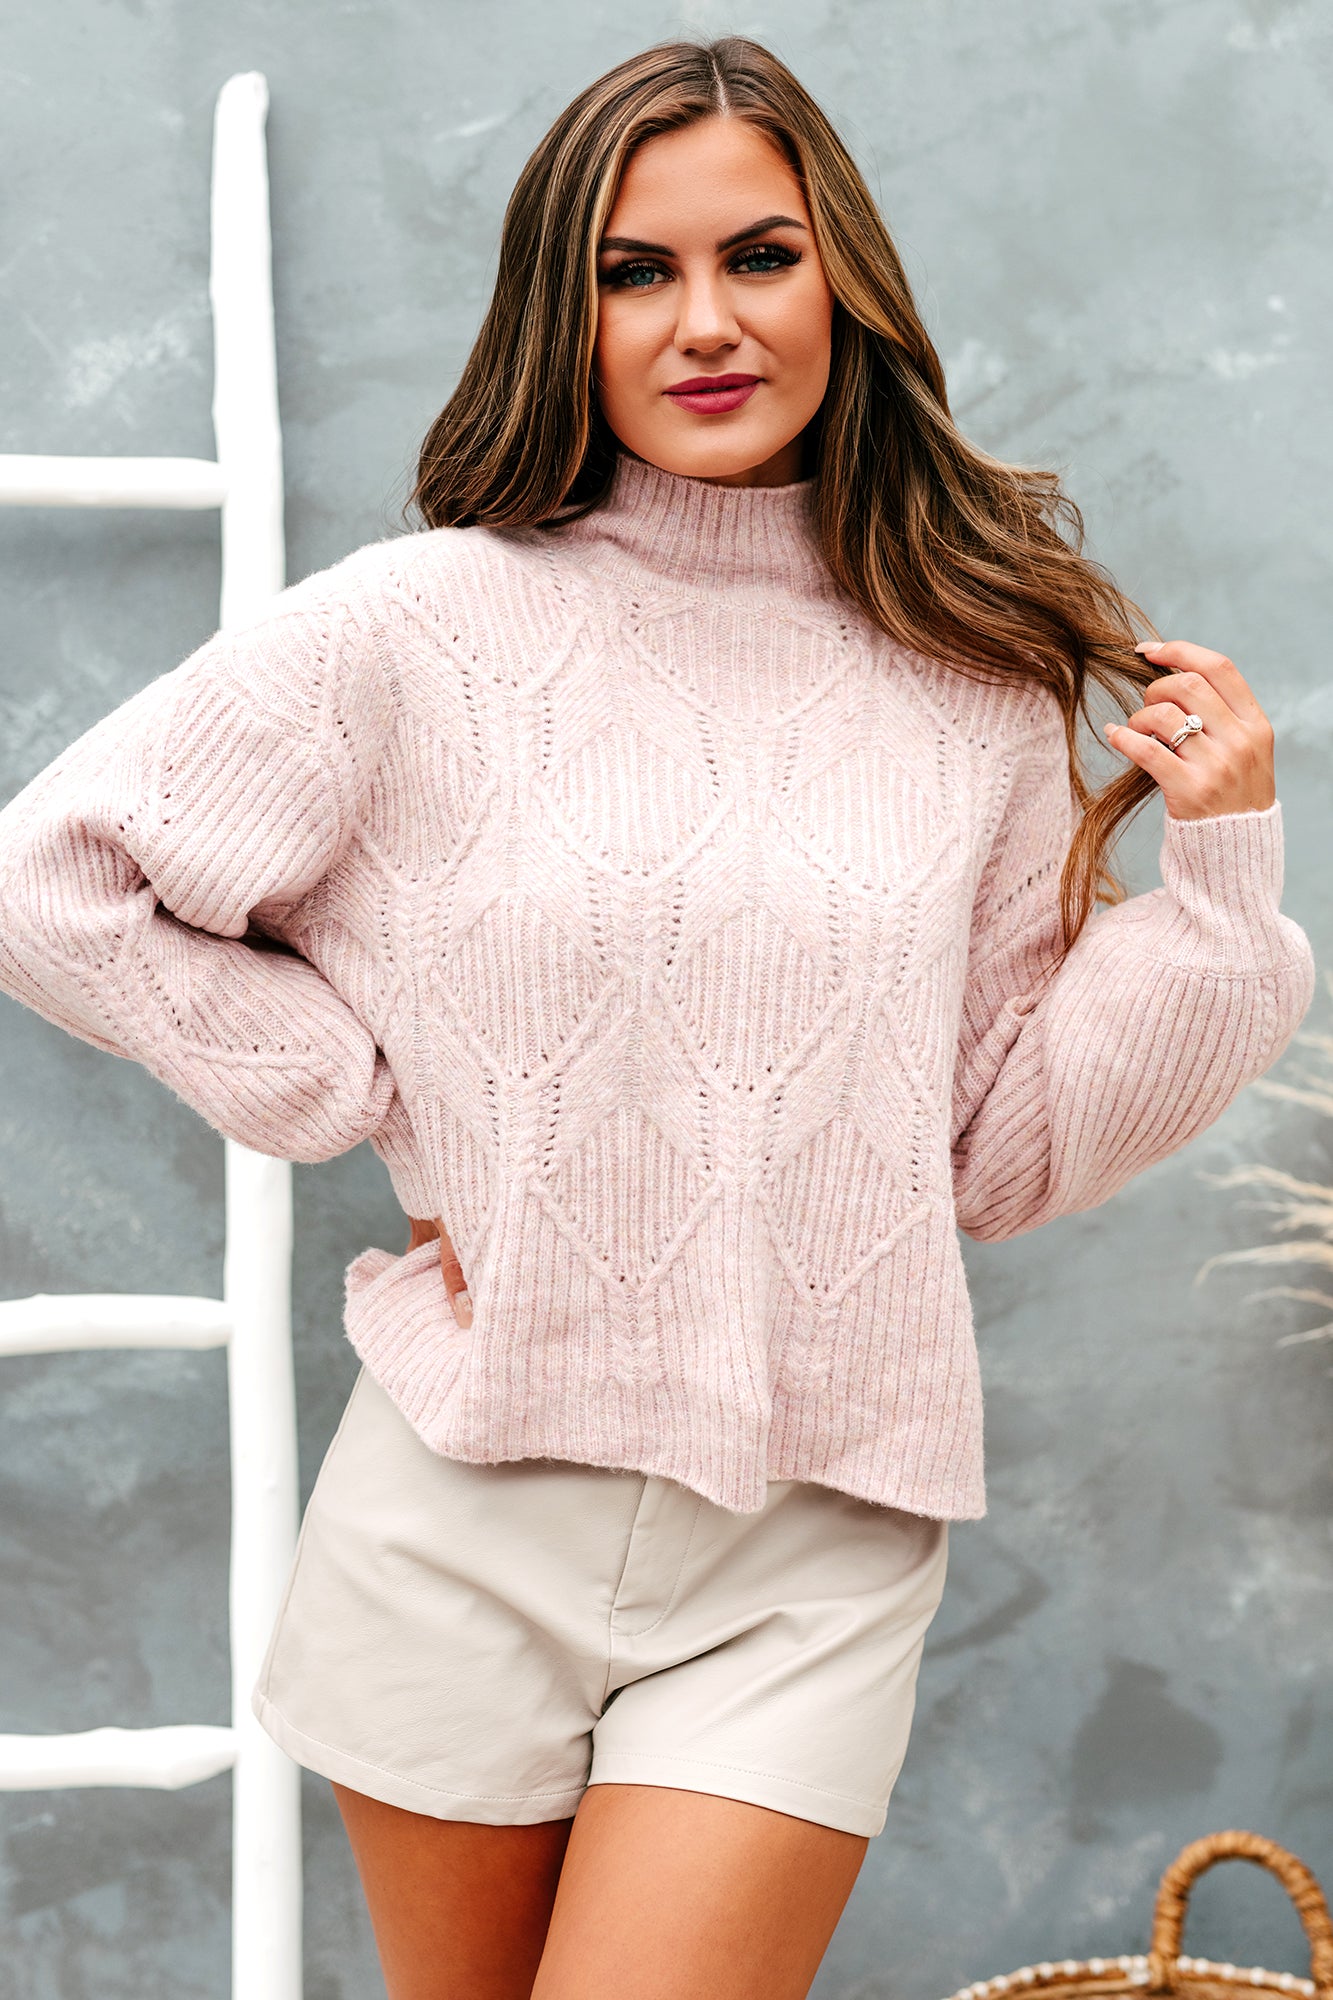 Catch A Chill Boxy Cable Knit Sweater (Blush) - NanaMacs